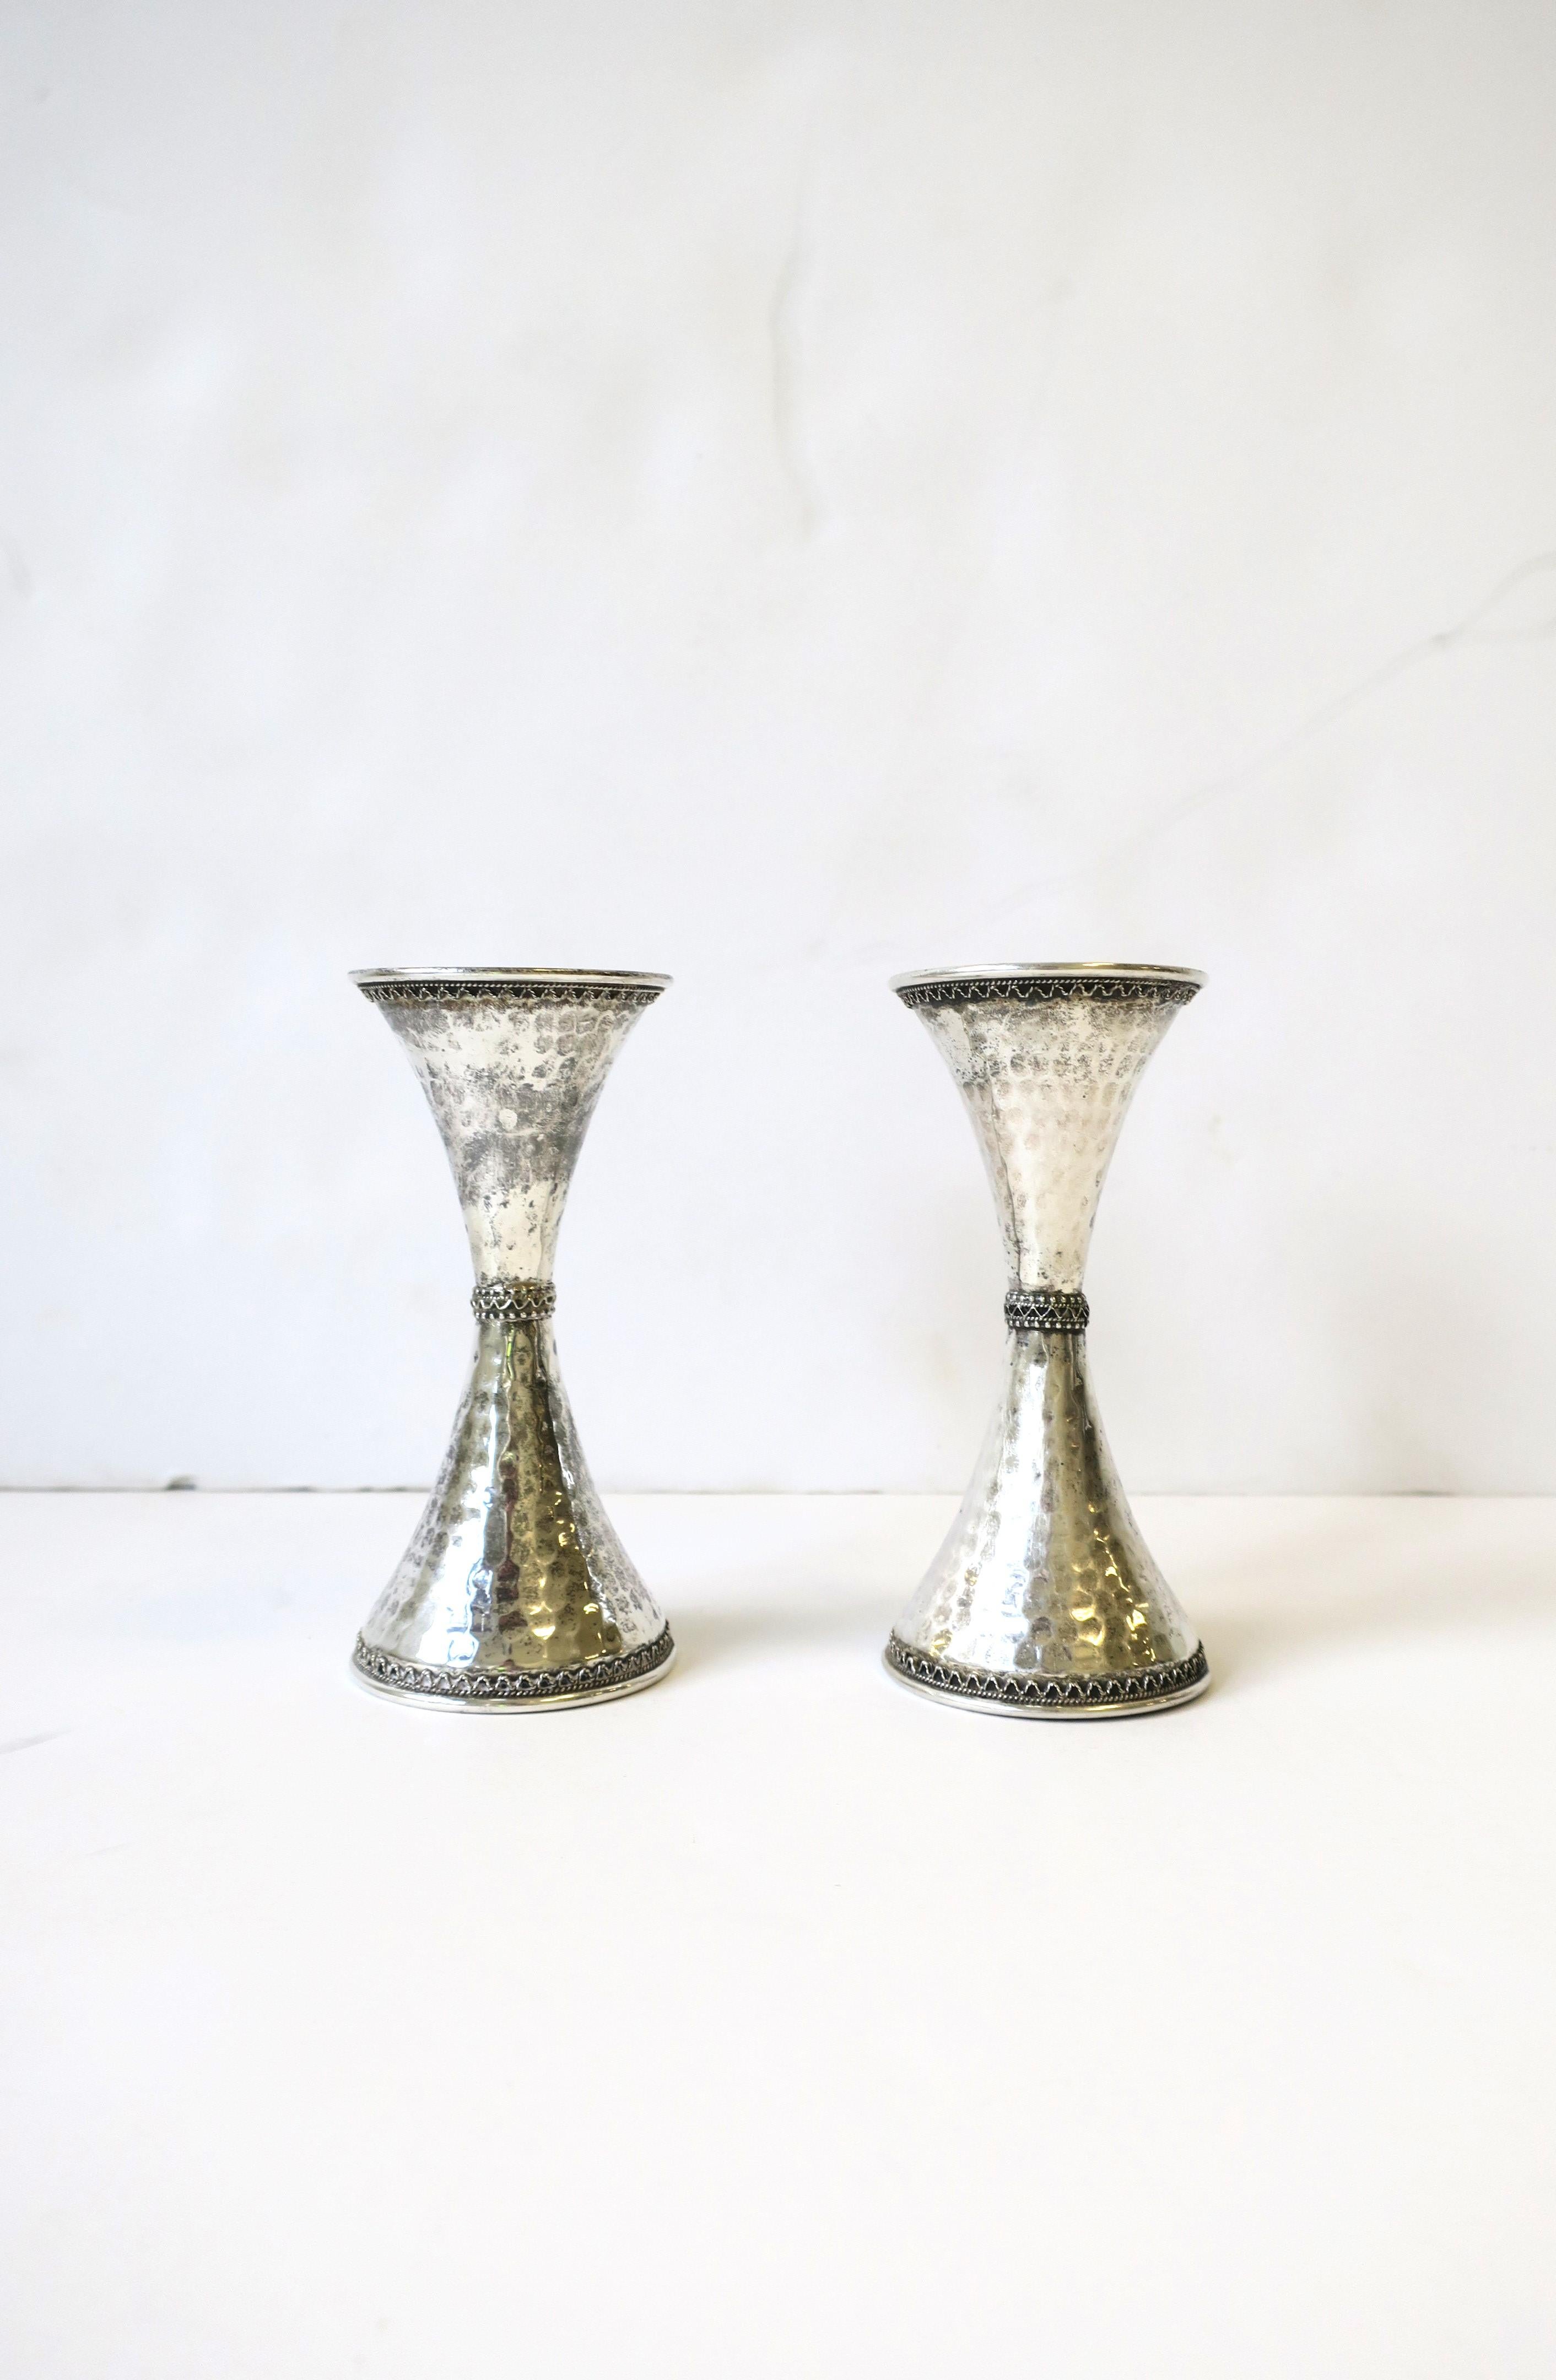 Magnifique paire de chandeliers en argent, vers le 20e siècle, Israël. Les paires ont une forme de sablier, un design martelé et de petits détails complexes en haut, au centre et à la base. Marqué à l'intérieur : 